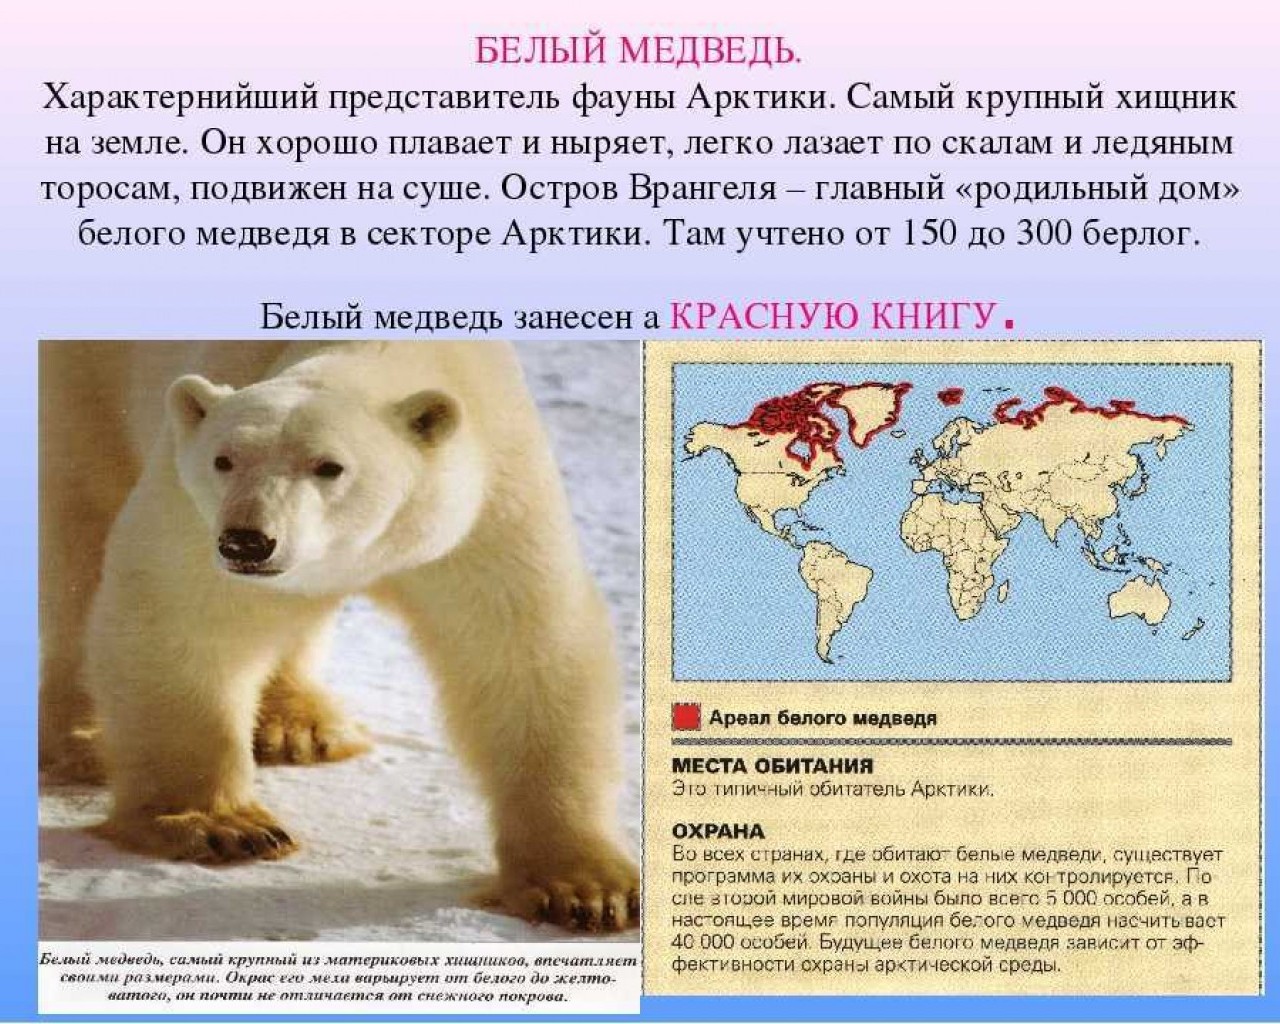 В каких местах обитают белые медведи и как они приспособились к экстремальным условиям северной полярной среды